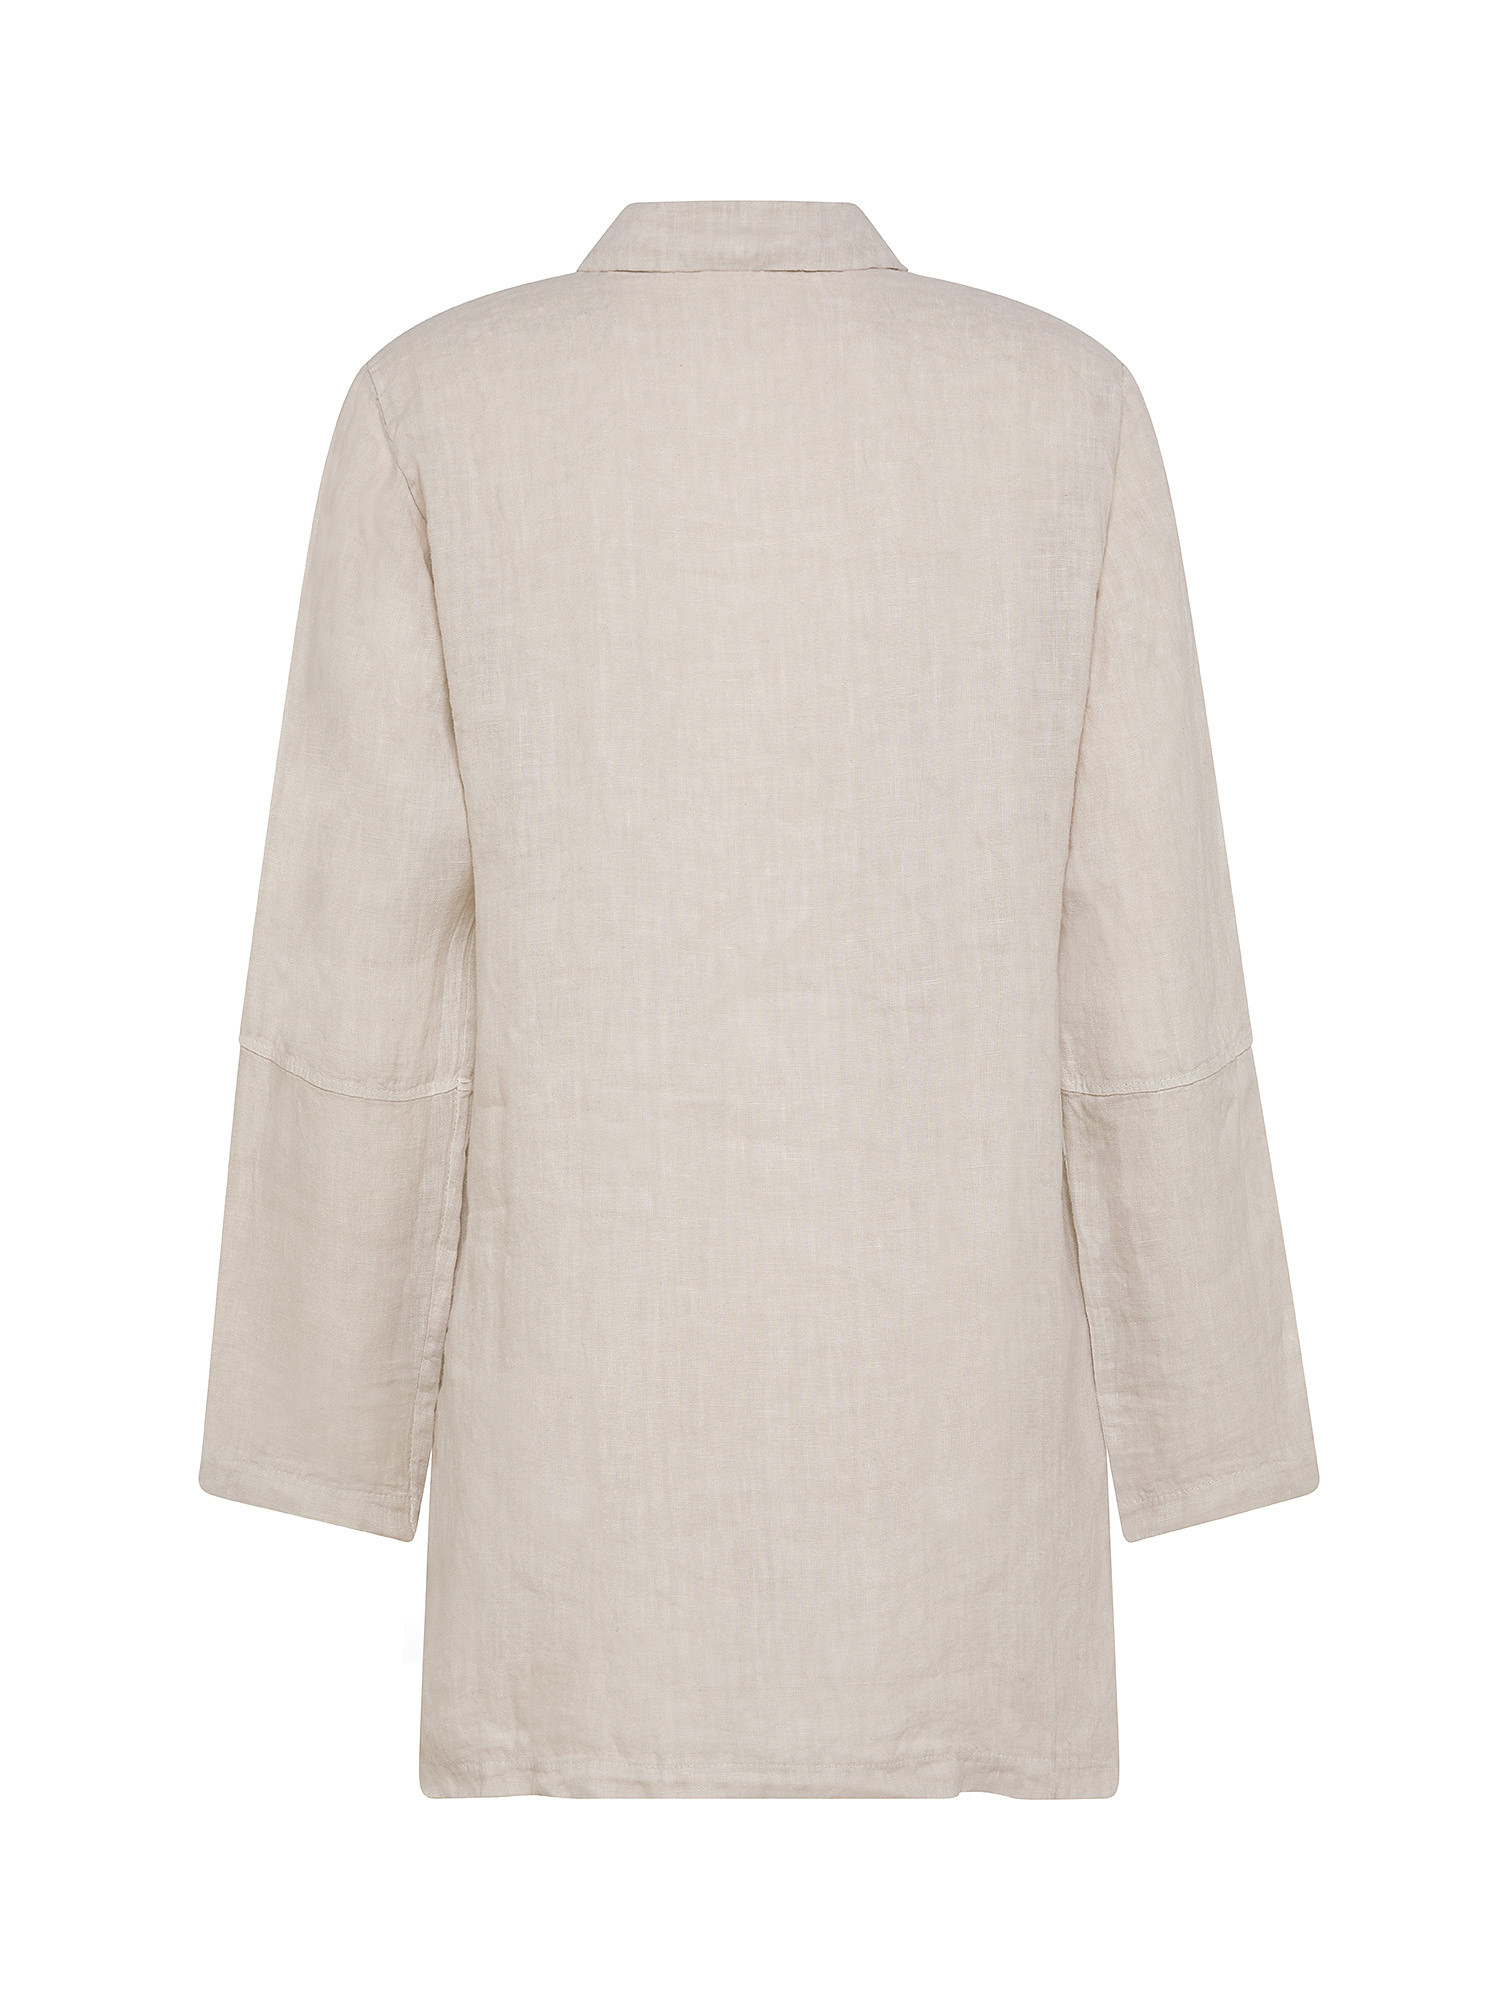 Koan - Long linen shirt, Beige, large image number 1